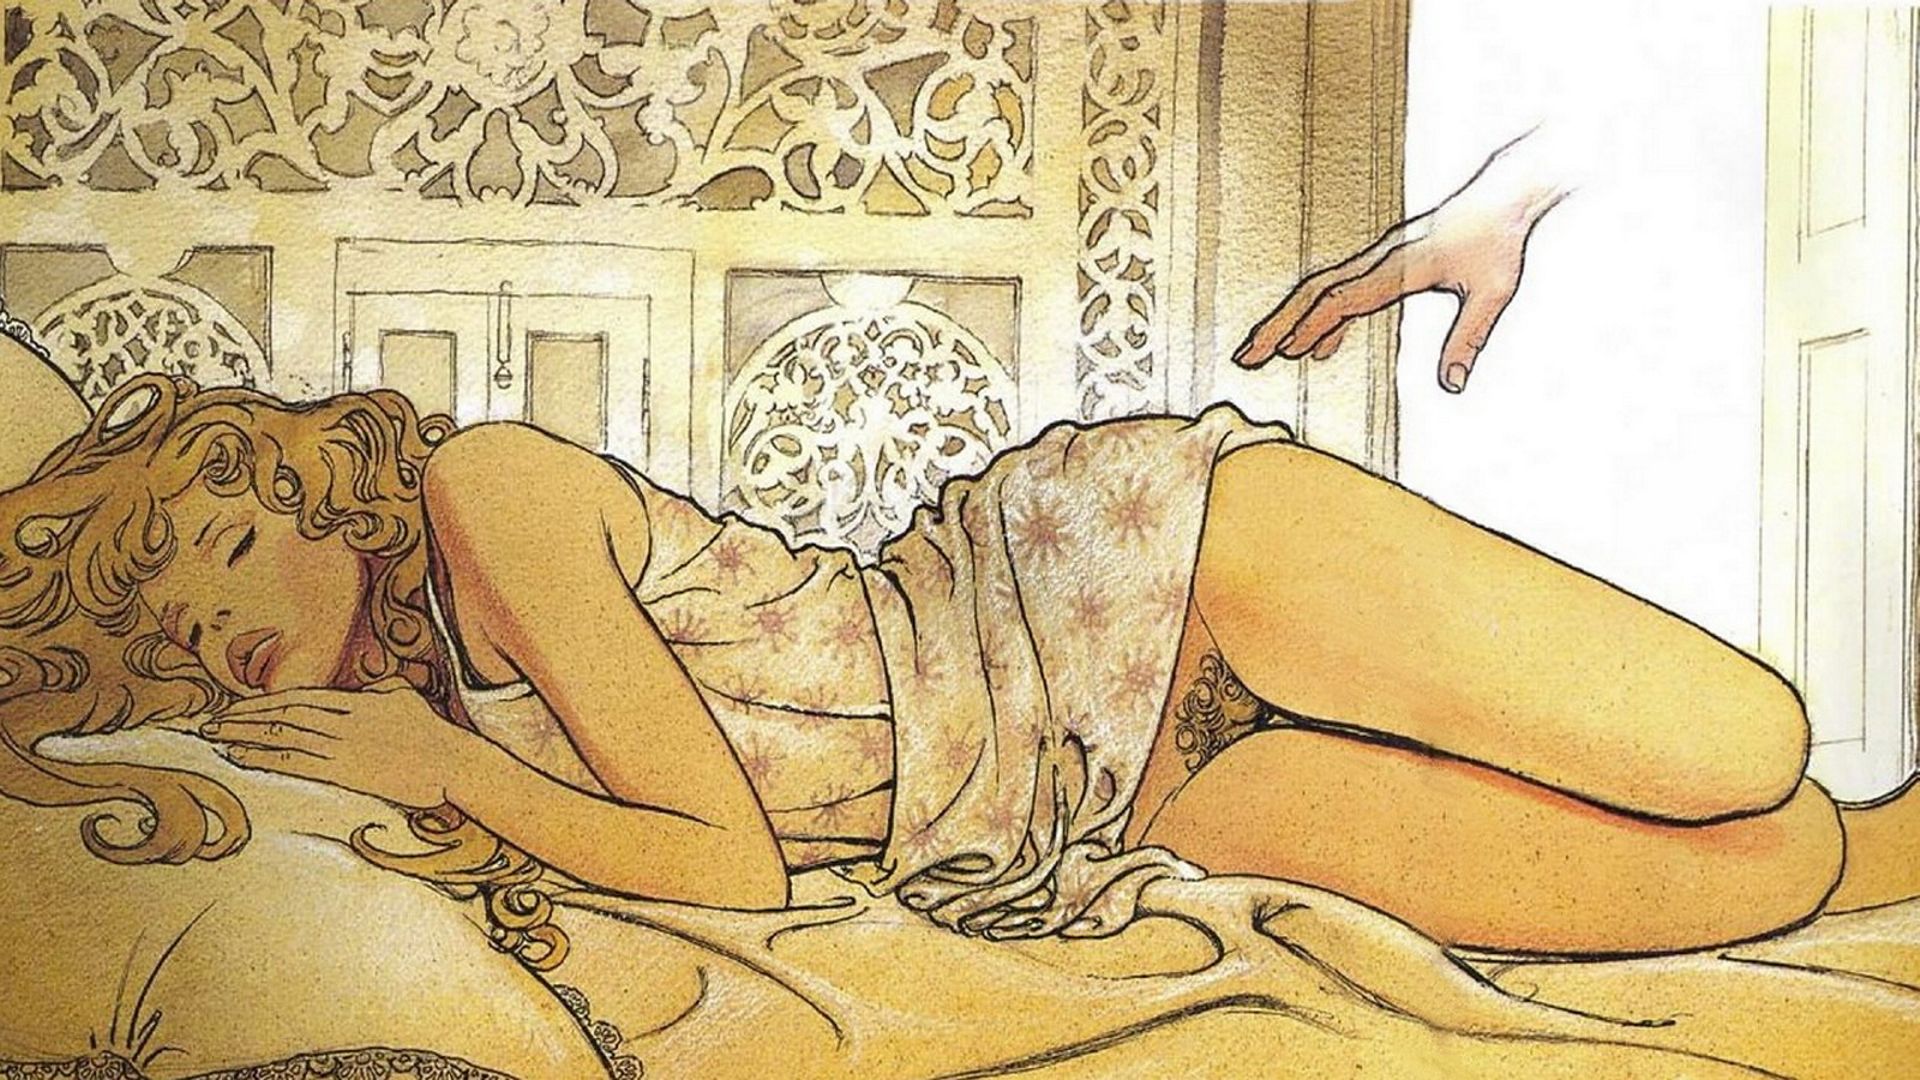 секс обои спящая девушка в задравшейся рубашке, видна ее голенькая волосатая писька. картинки надписи для рабочего стола